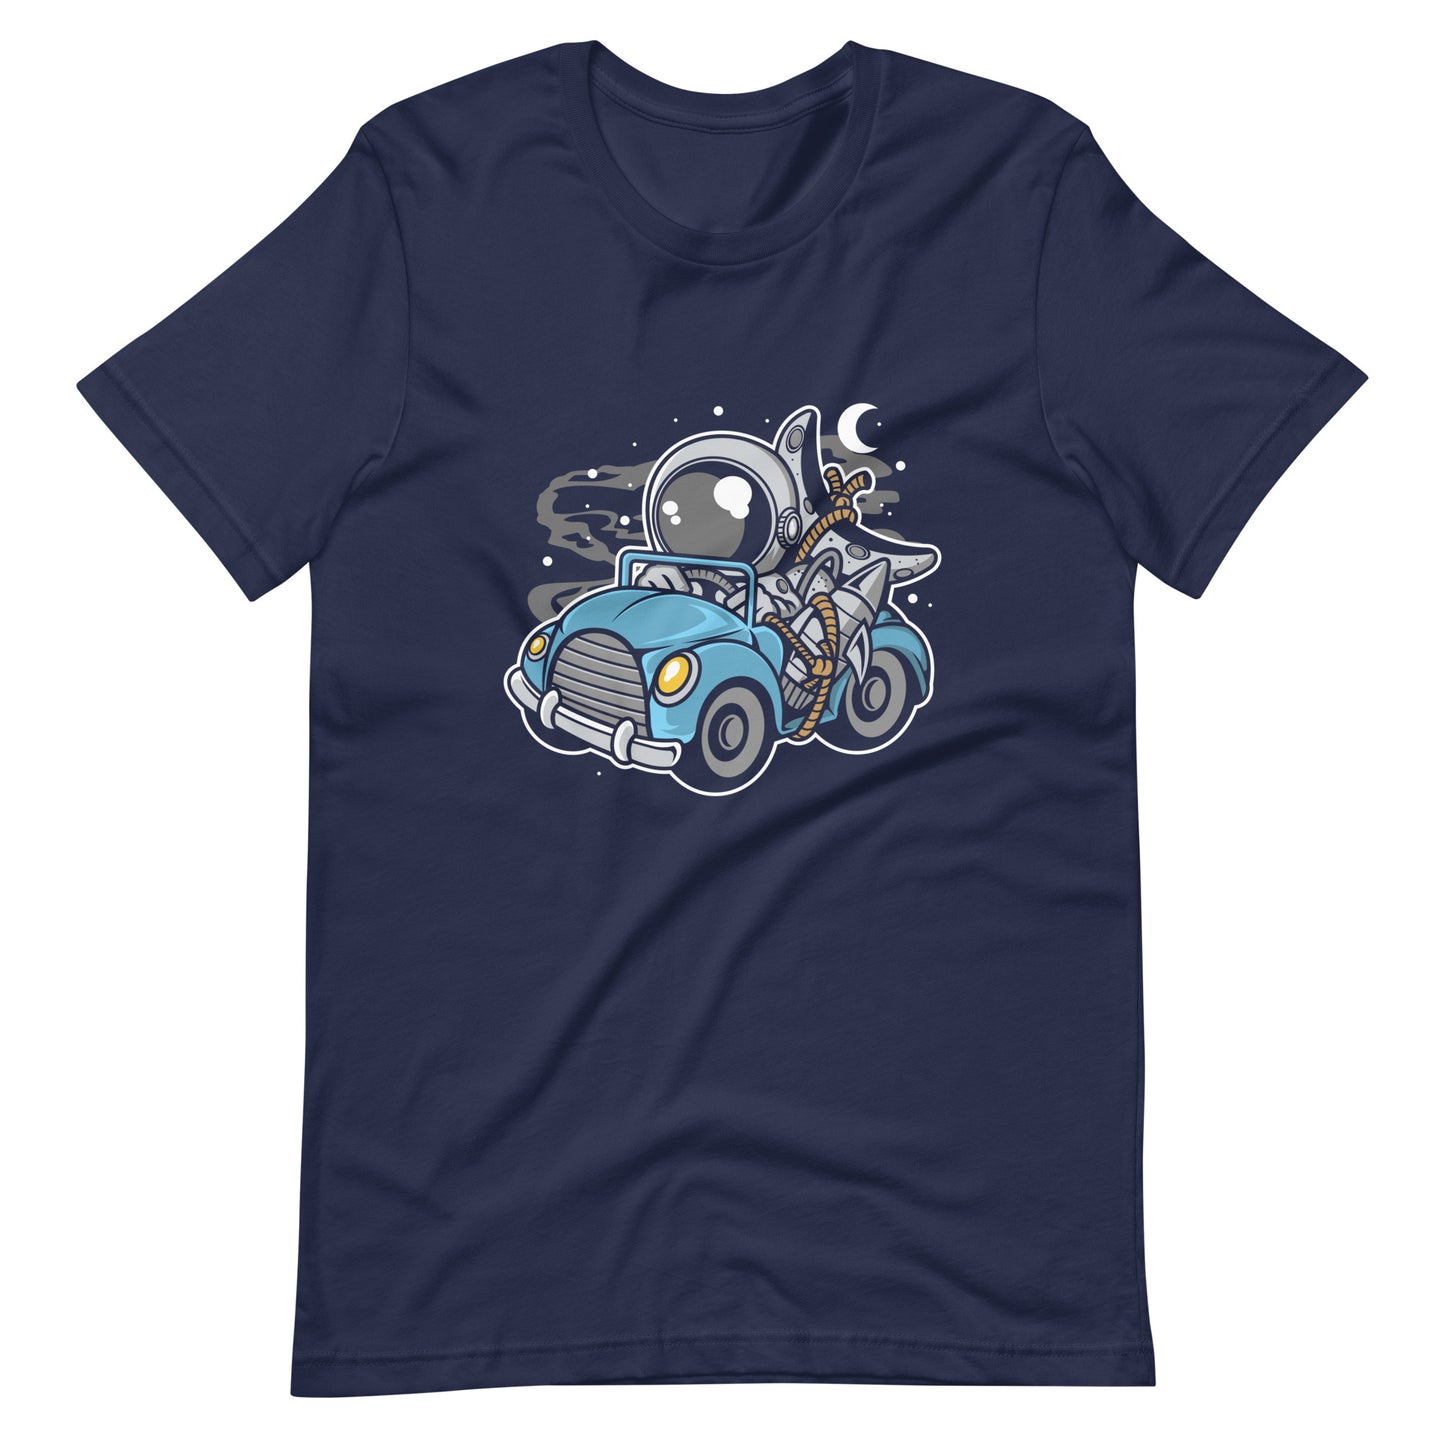 Astronaut Journey - Men's t-shirt - Navy Front